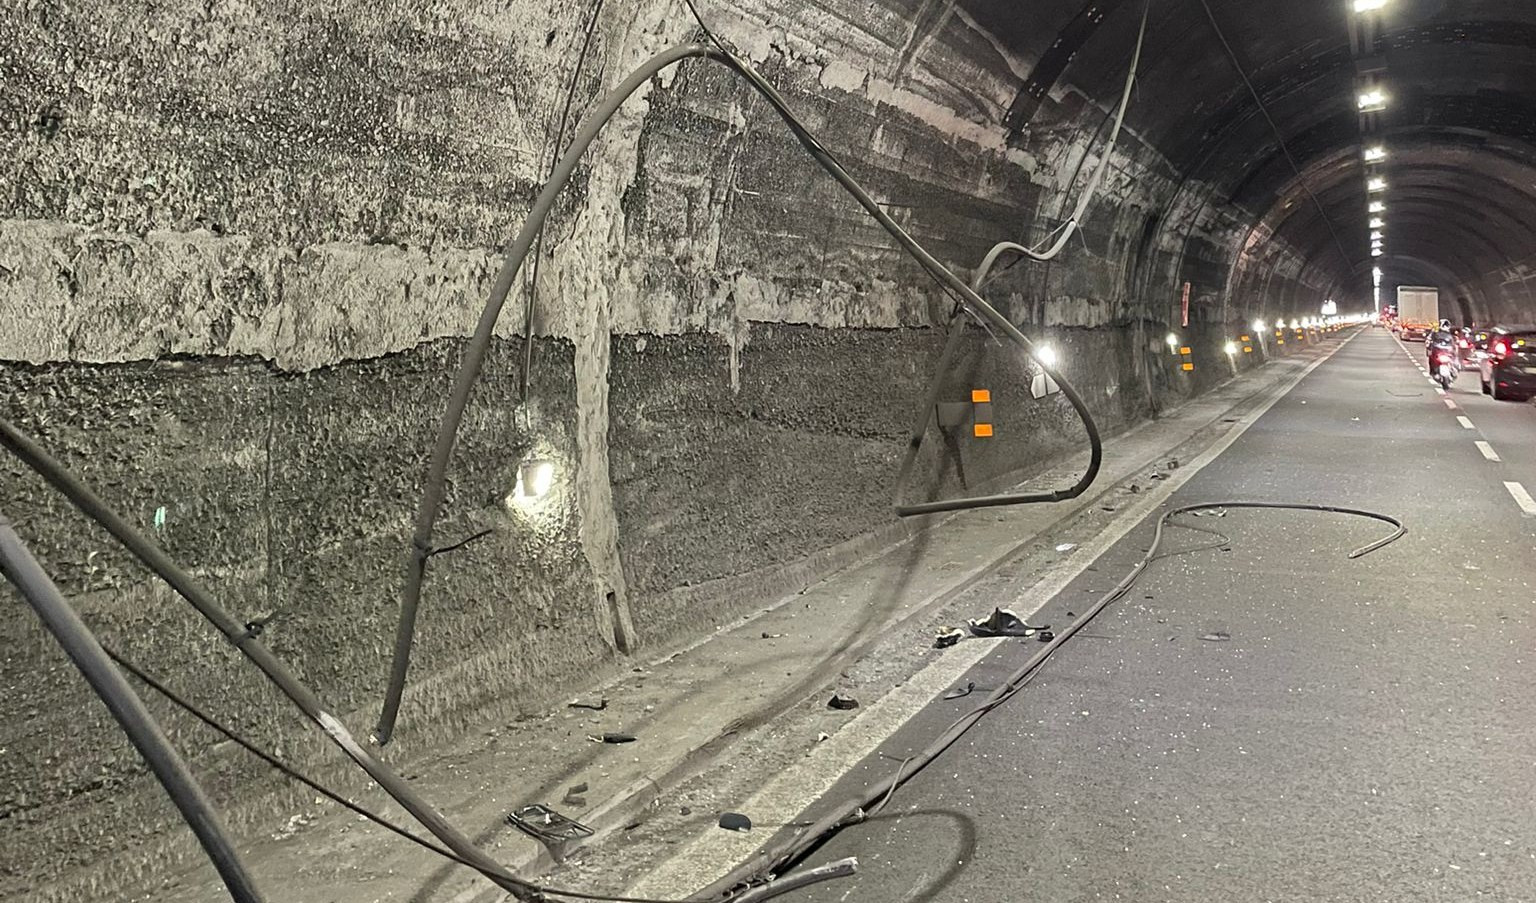 Caos autostrade, crollano cavi elettrici in galleria: tre feriti